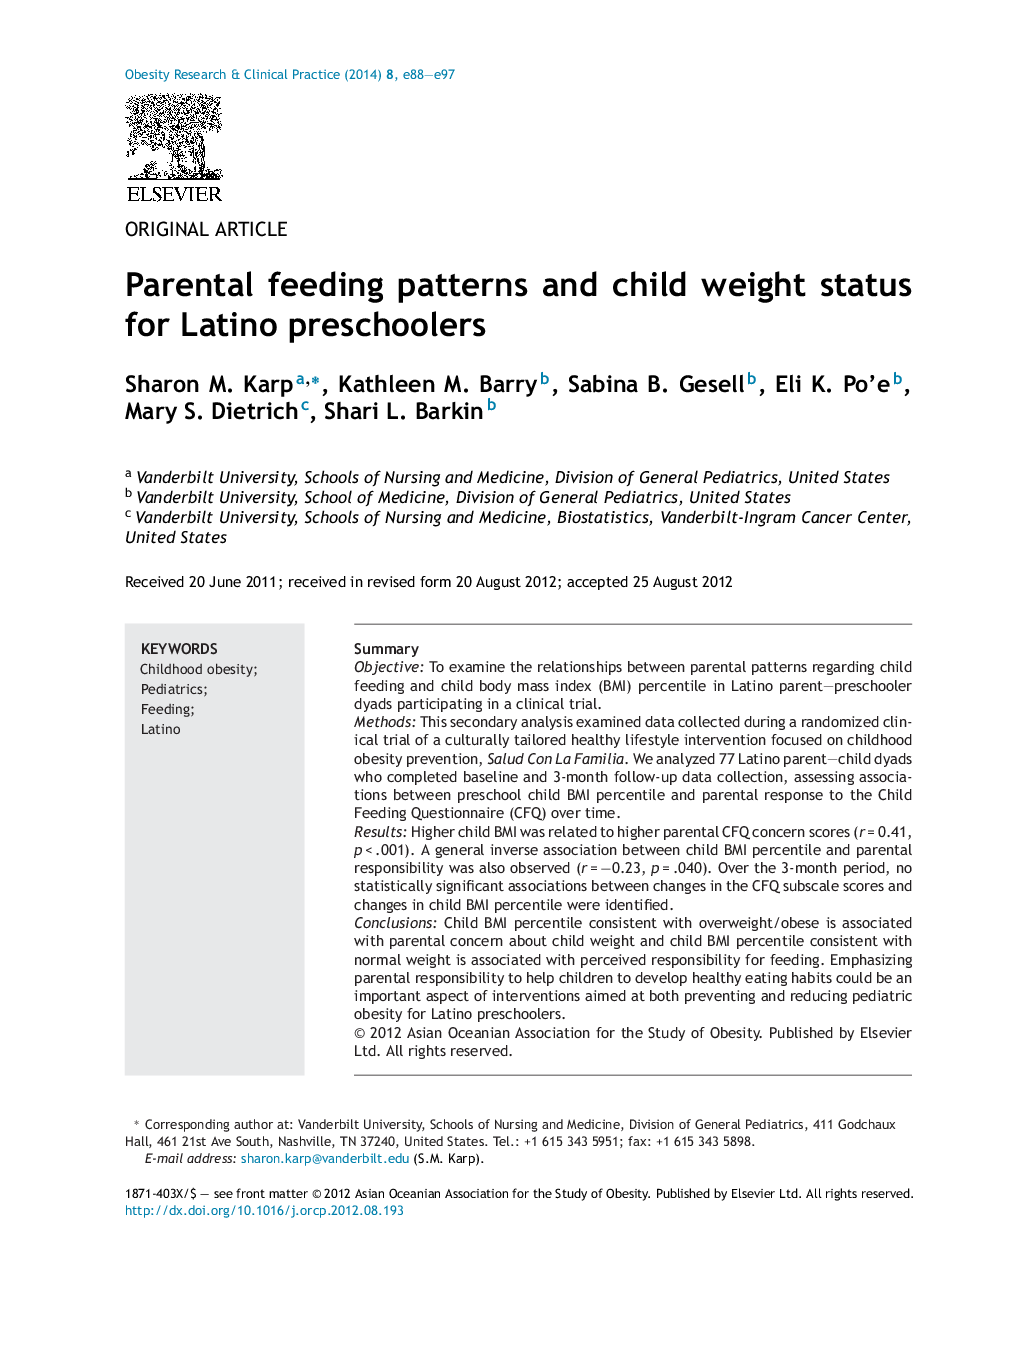 الگوهای تغذیه والدین و وضعیت وزن کودک برای پیش دبستانی های لاتین 